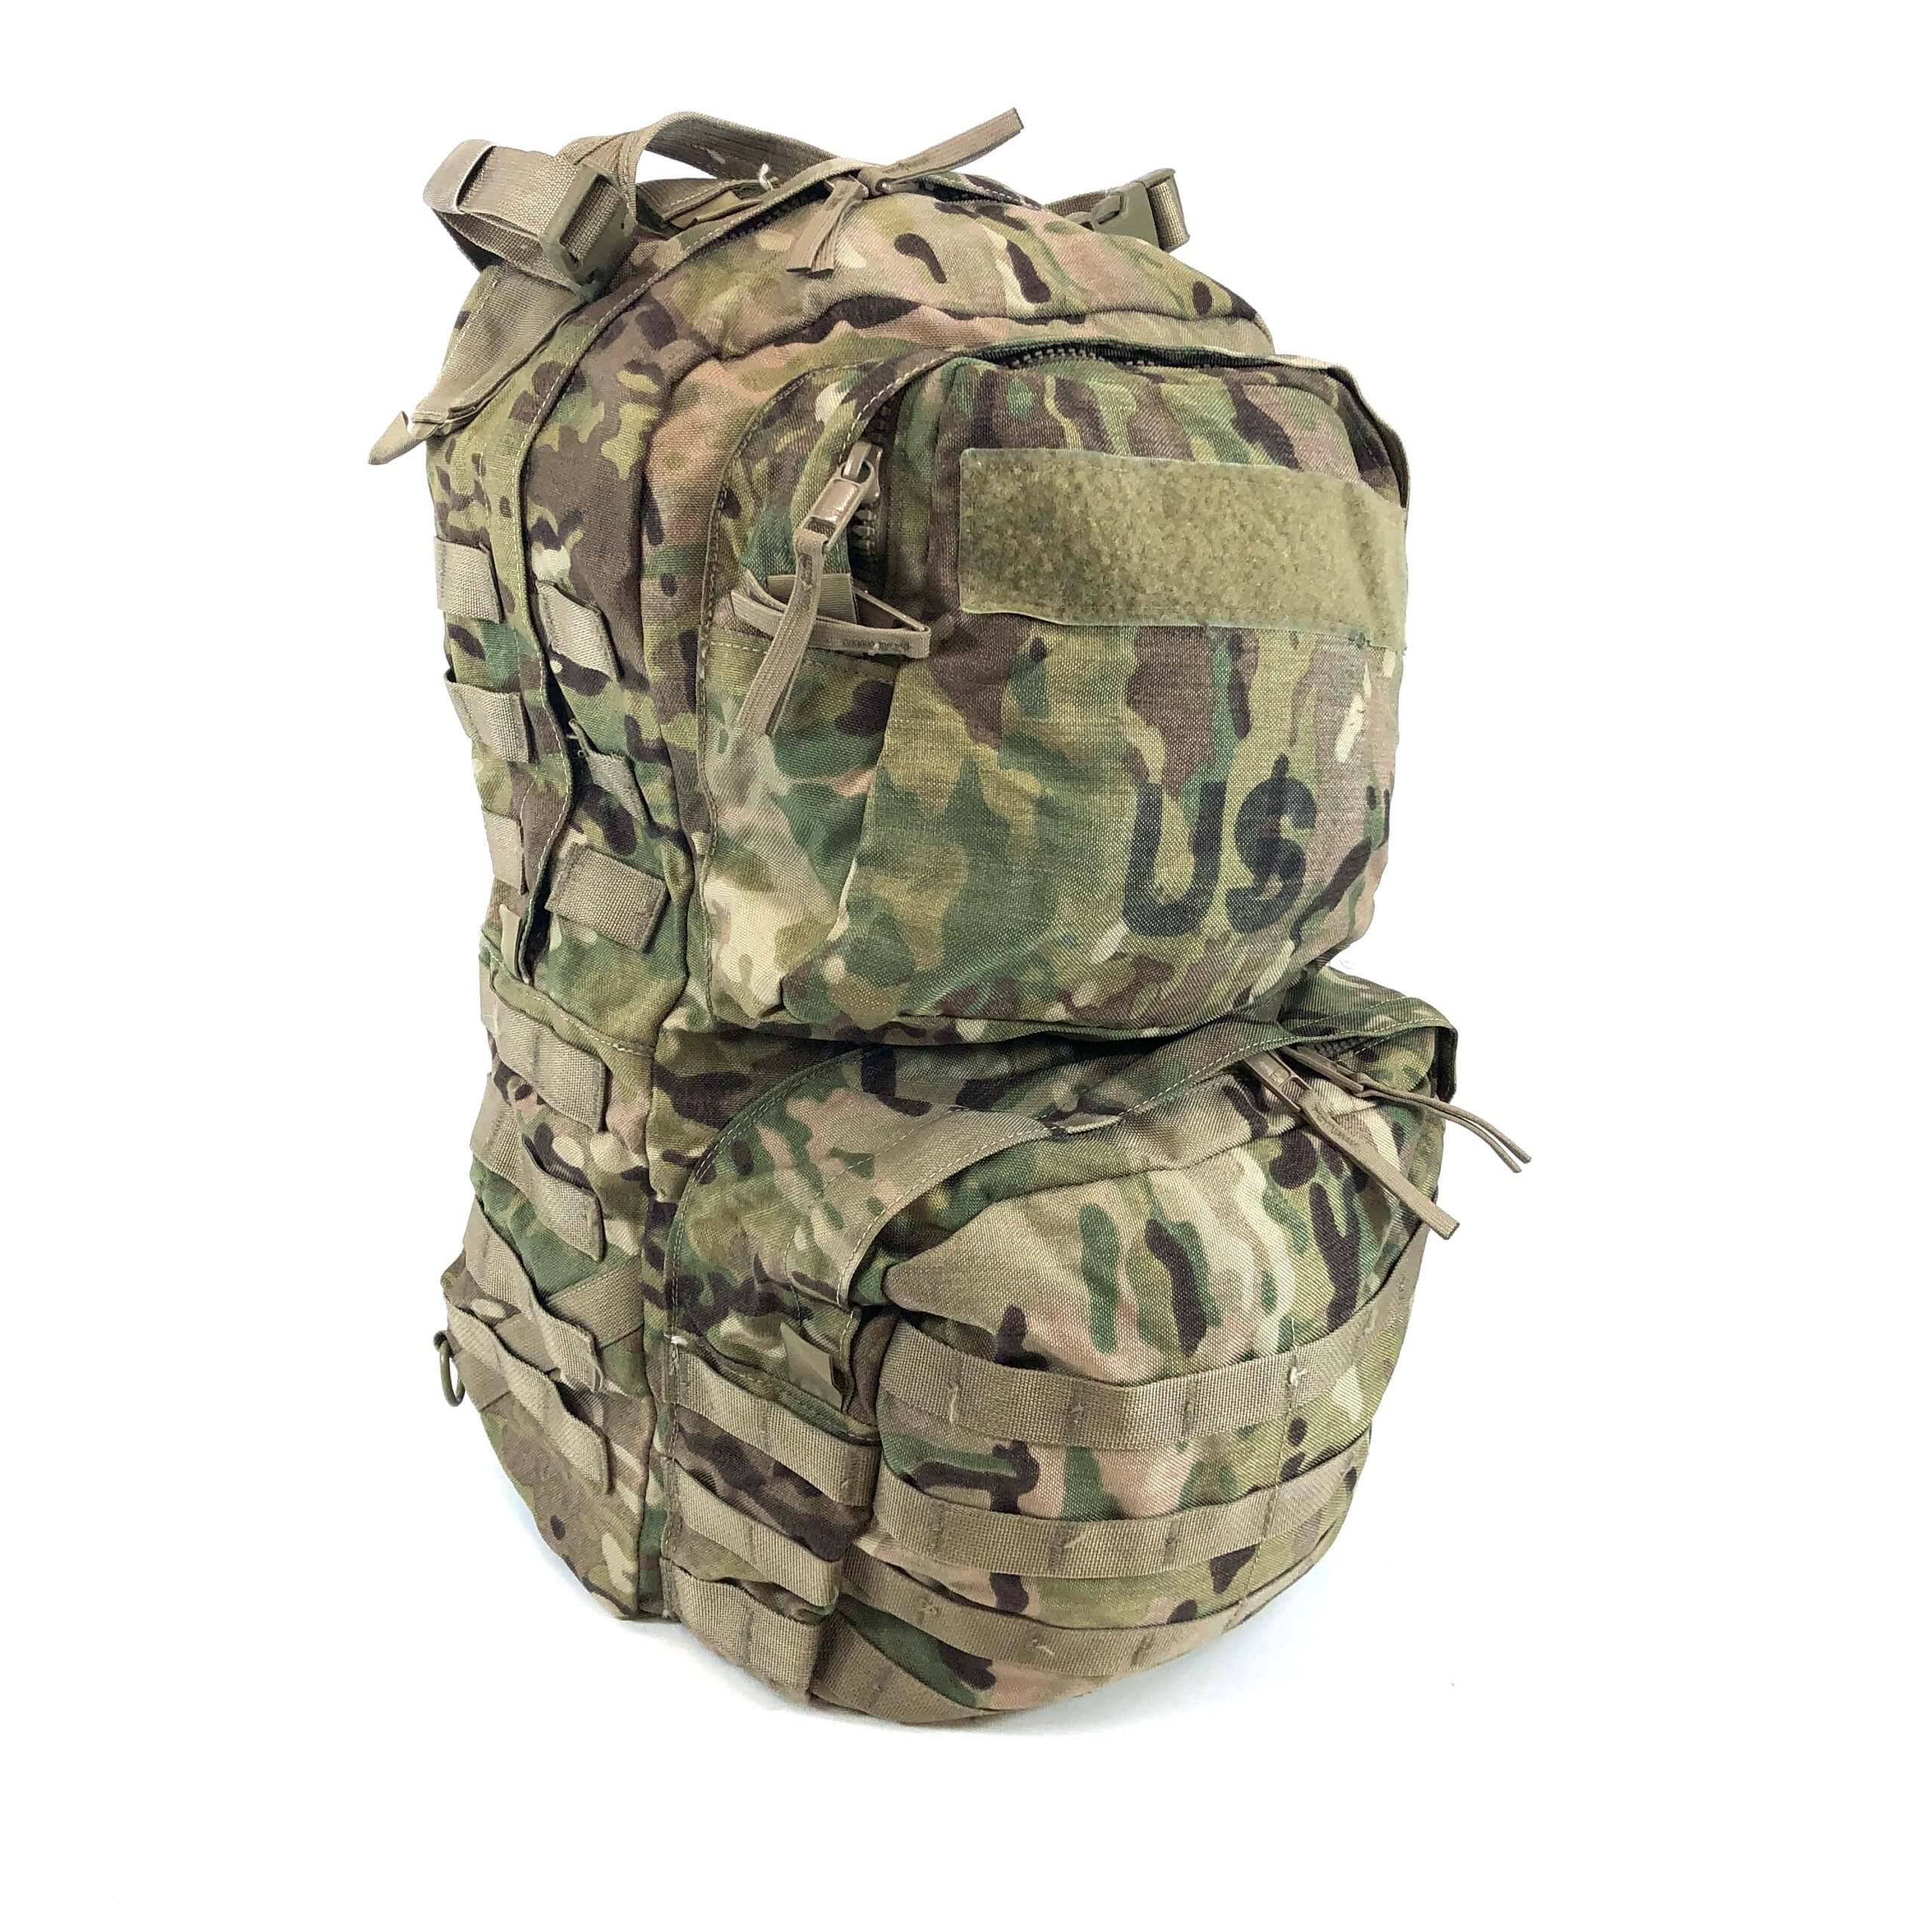 USGI Large Combat Rucksack Bag NO FRAME Multicam US Army MOLLE Ruck Backpack